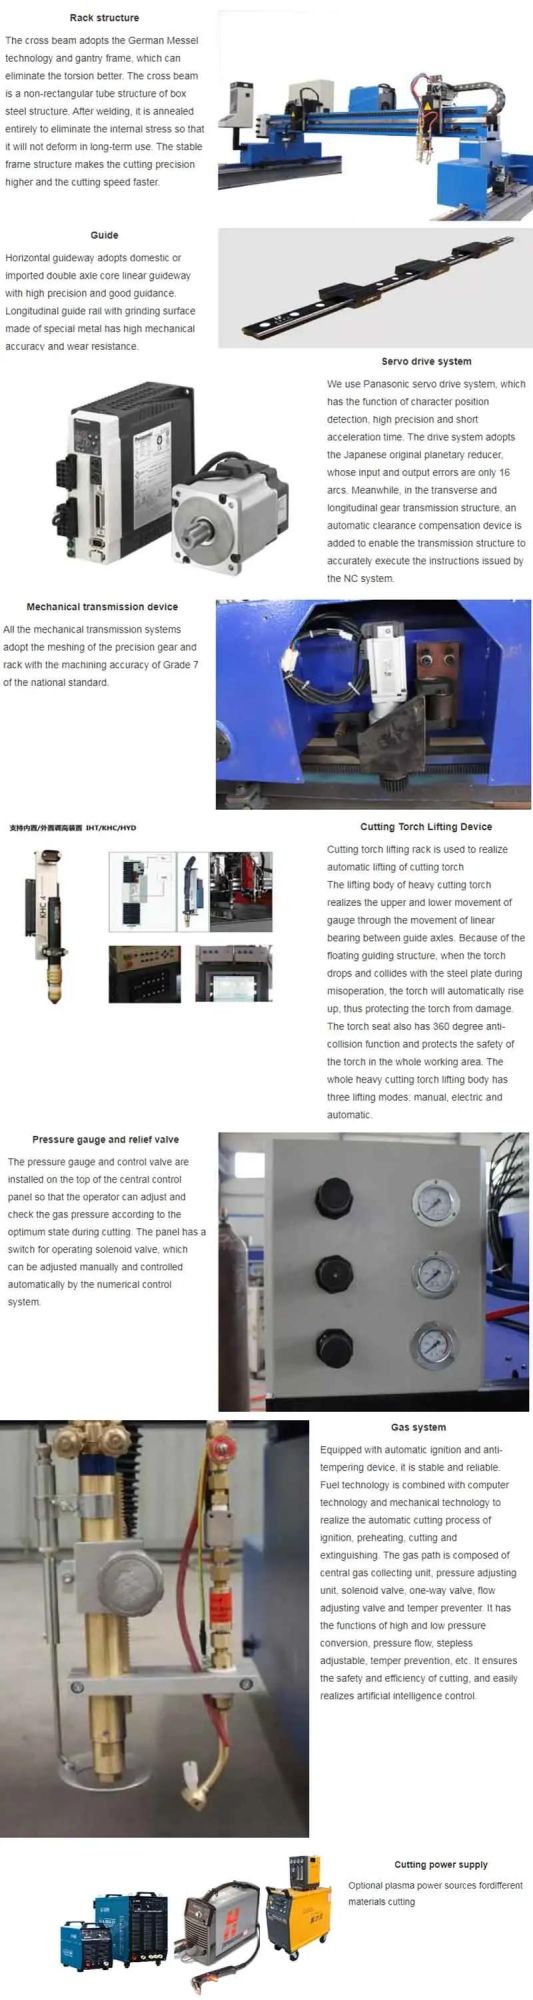 CNC Plasma Profile Cutter CNC Plasma Cutting Machine